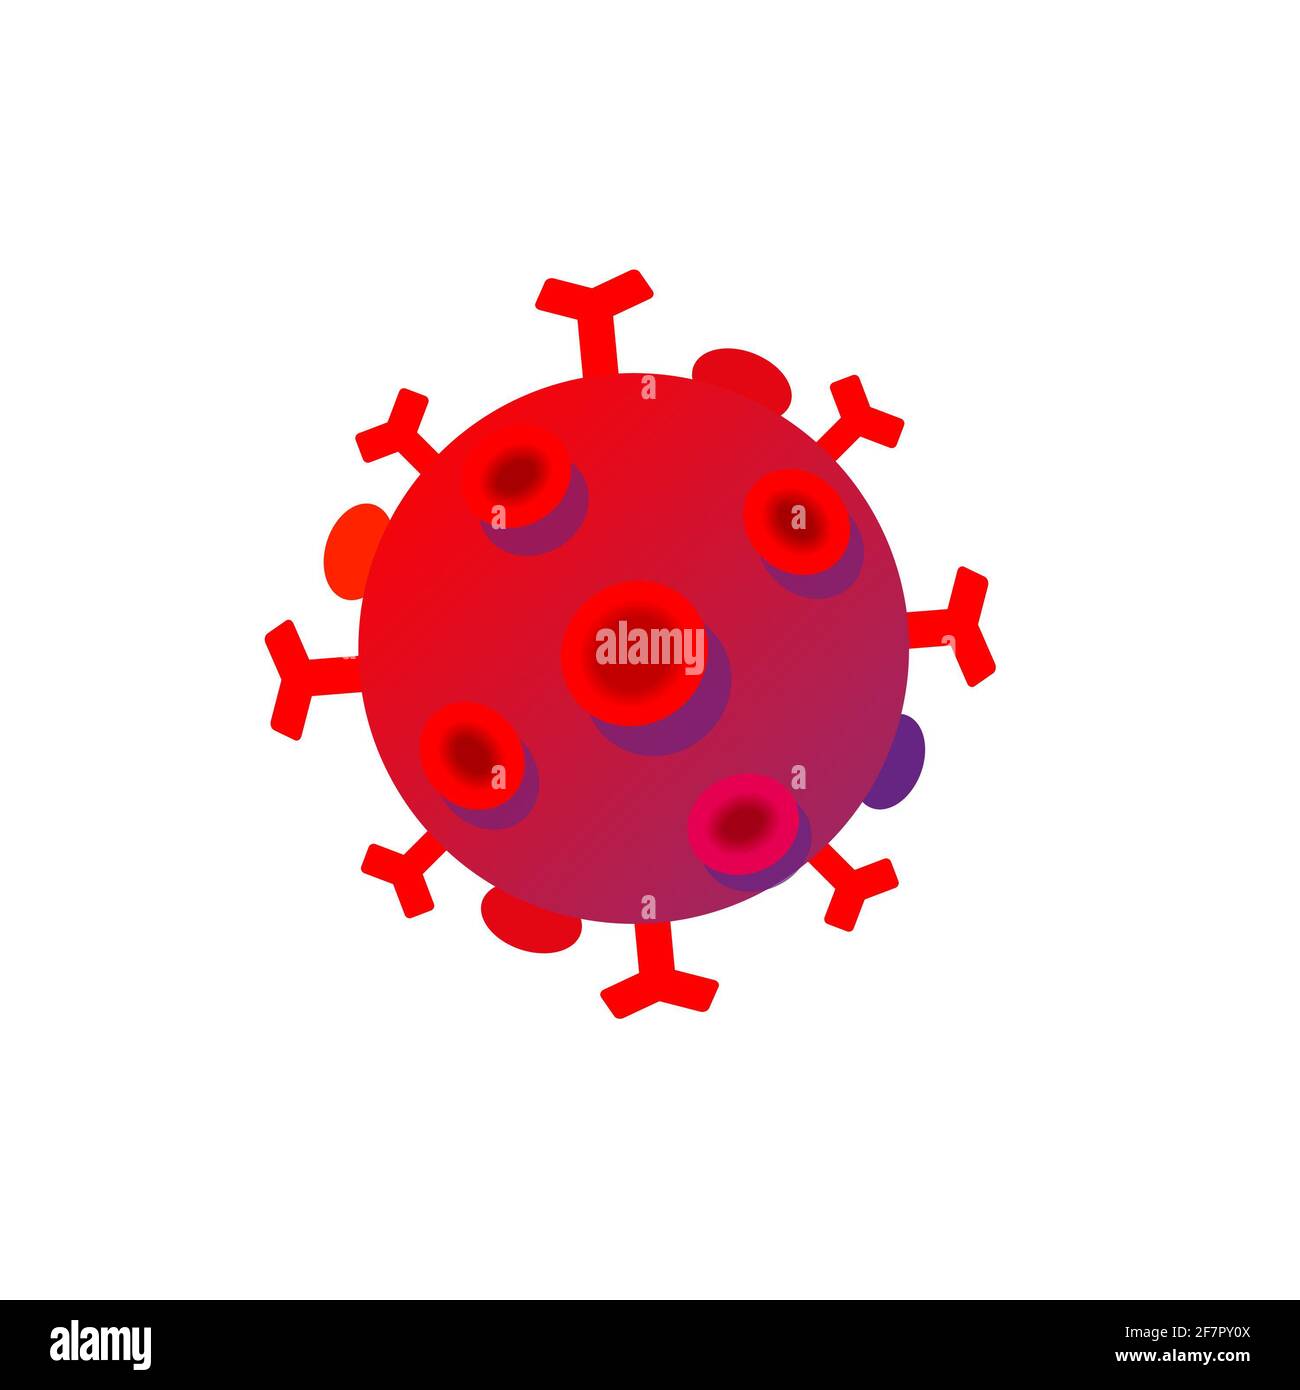 Coronavirus de la grippe vectorielle, corvid 19, logo du virus corona 2020, illustration, grippe asiatique. Bactéries réalistes, infection microbe et sang, biologie Banque D'Images